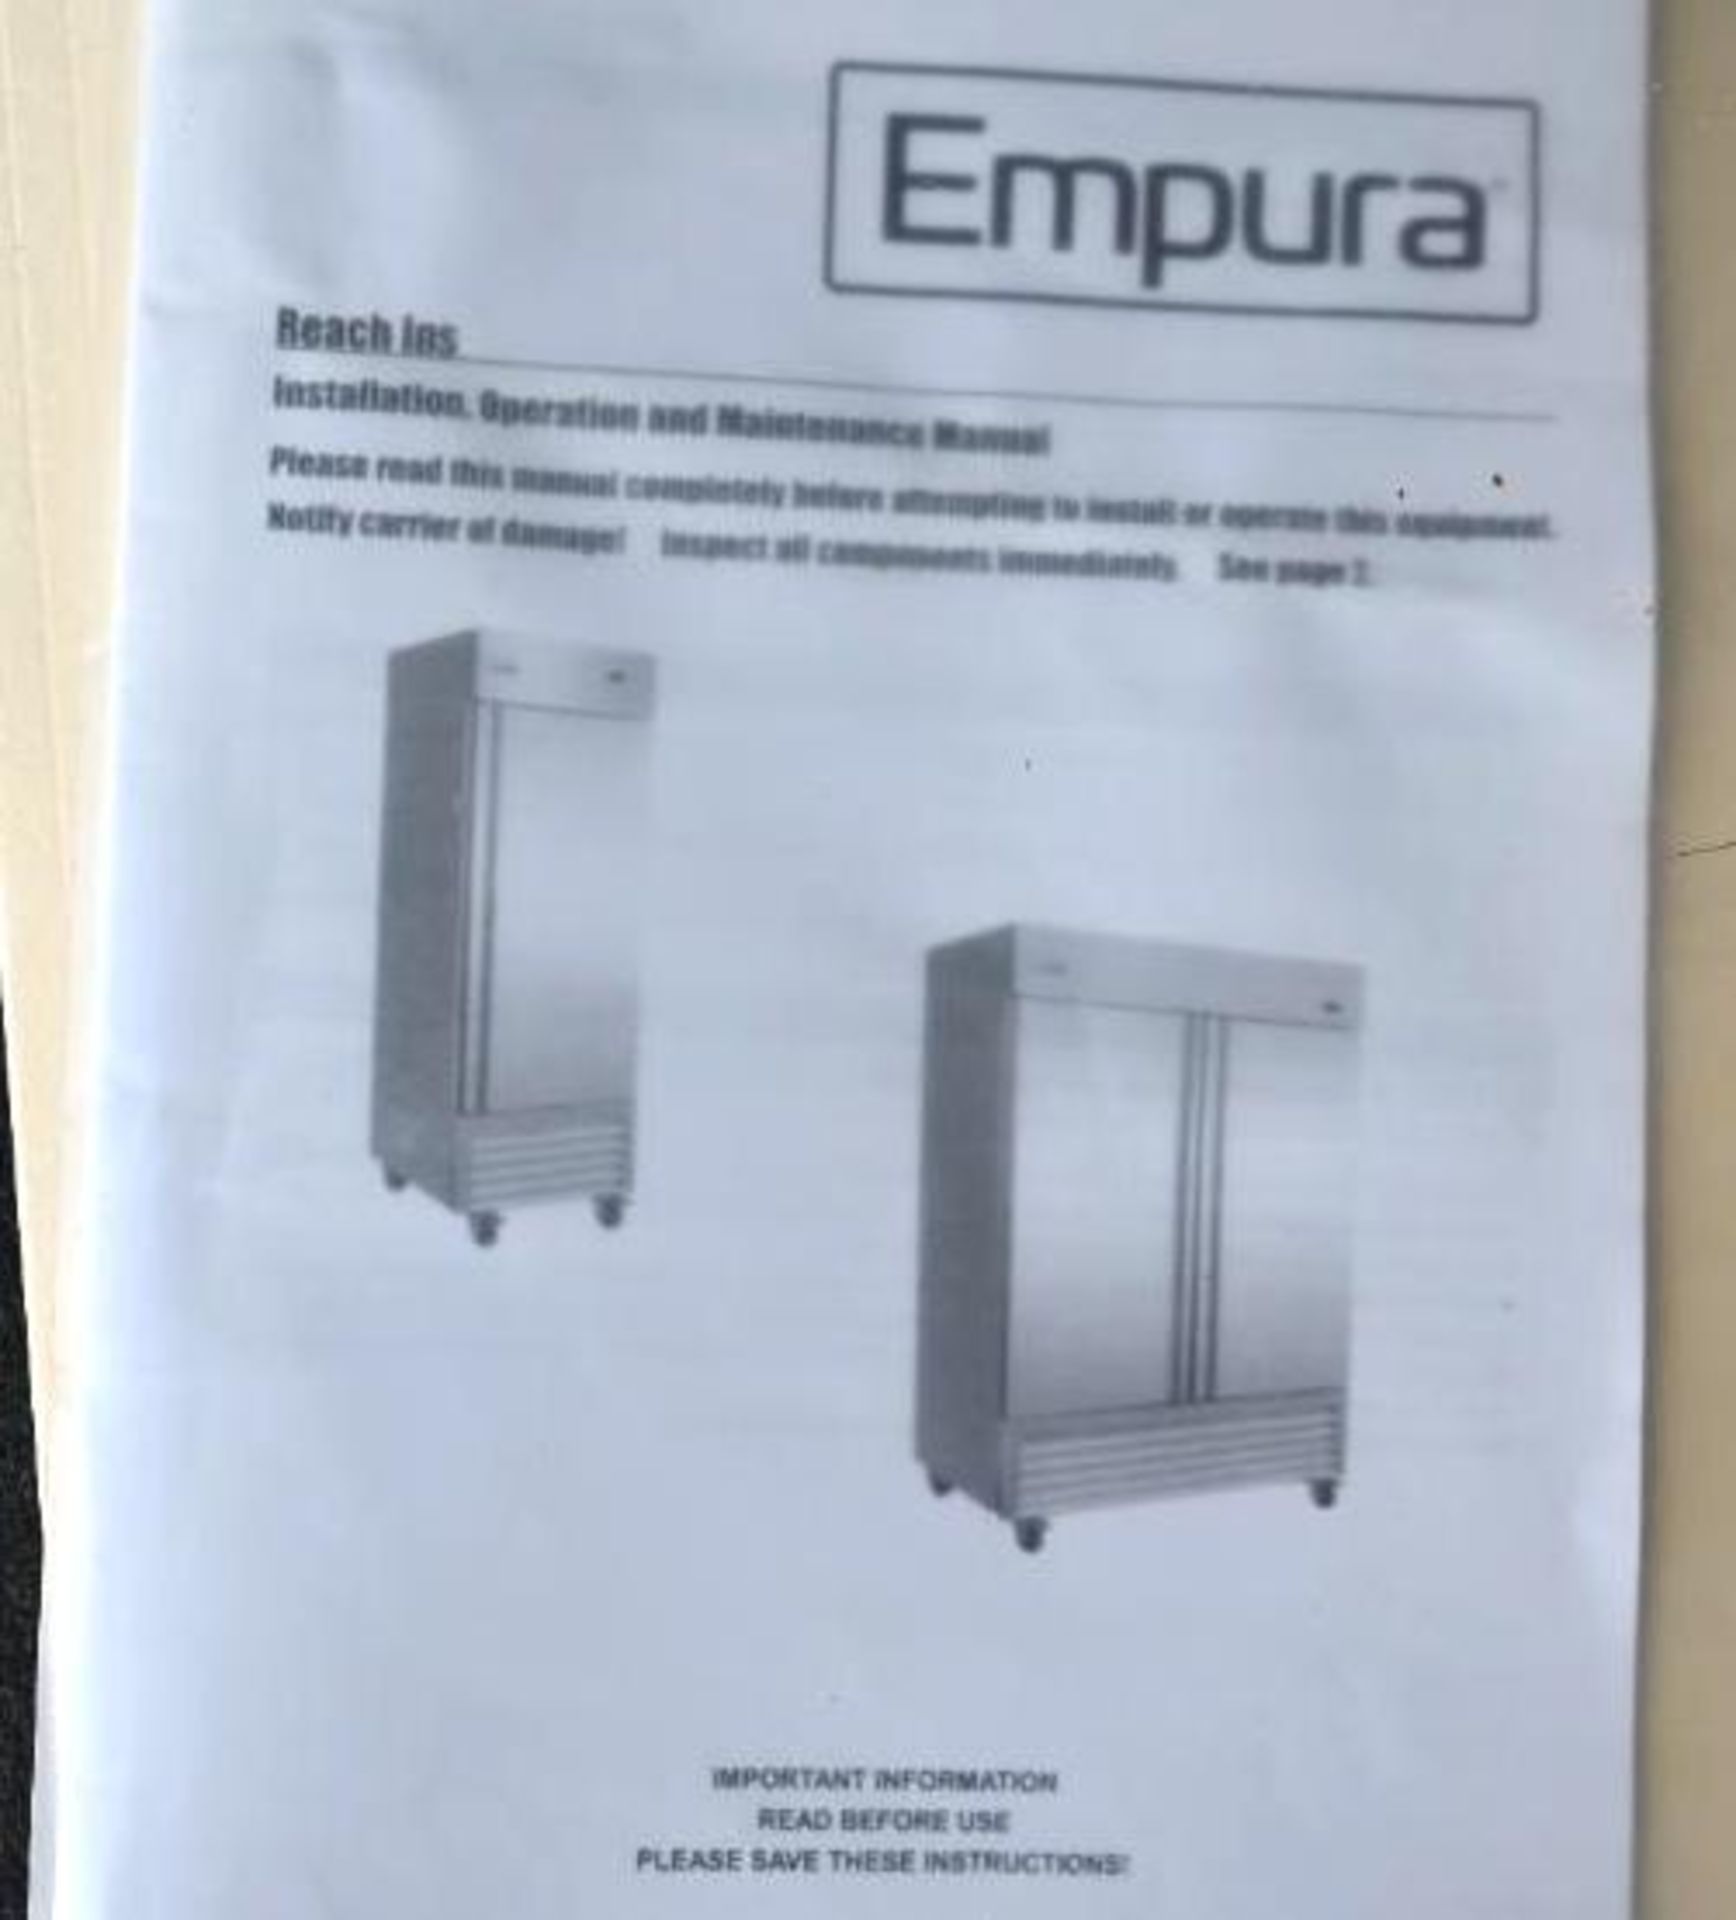 Empura model EKB54R Stainless Commercial Refrigerator - Image 14 of 14